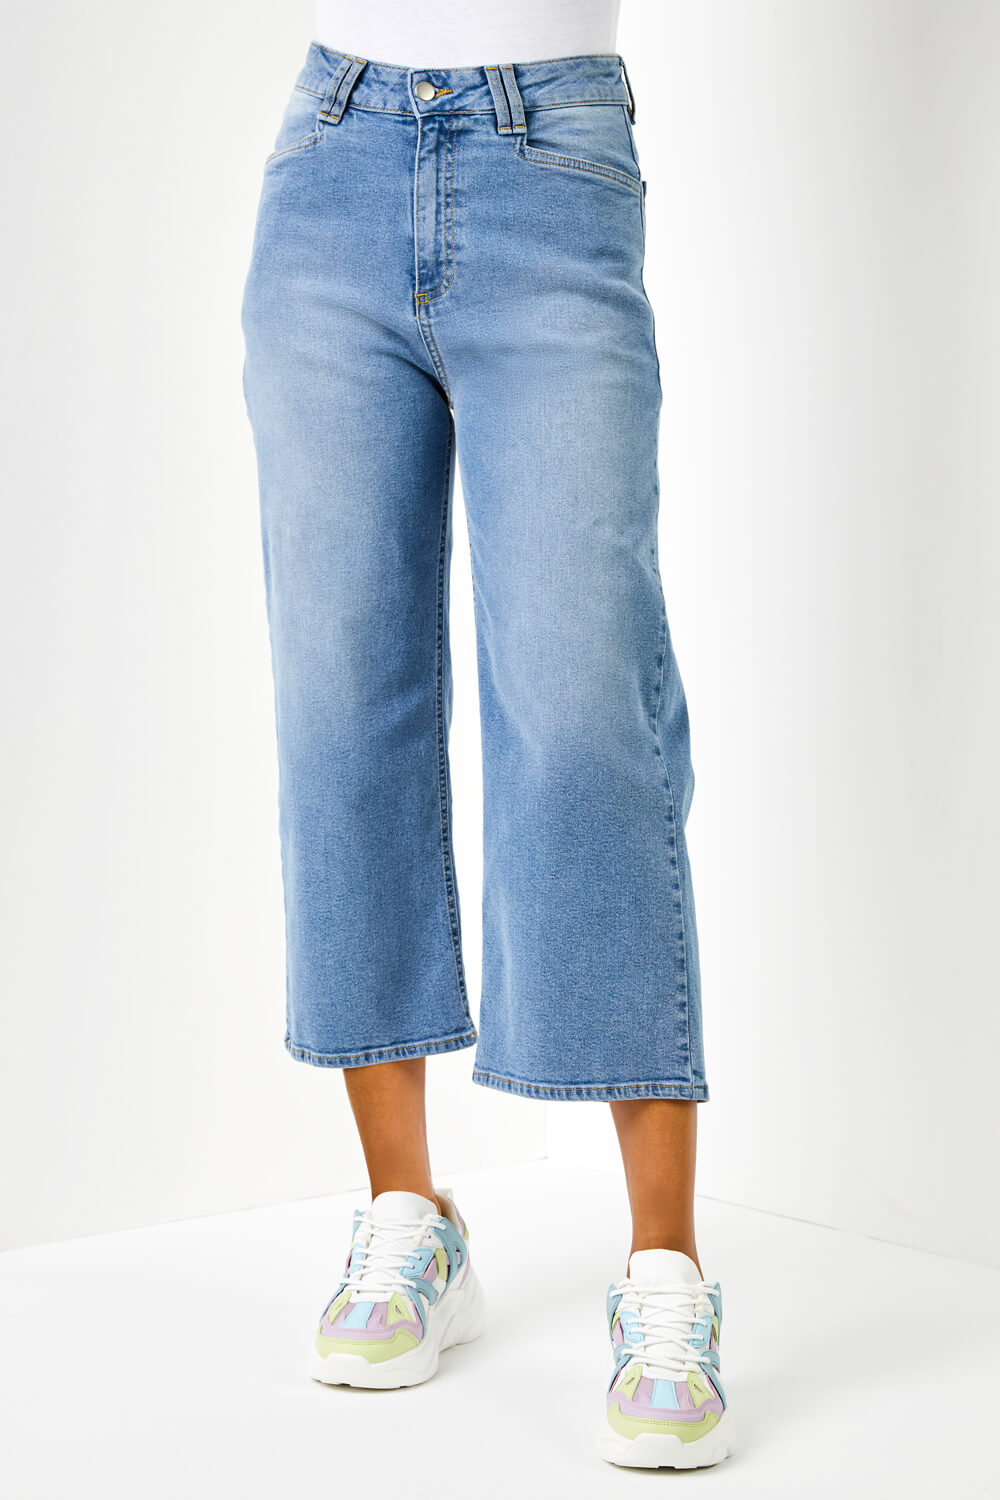 J Brand Jeans Womens 26 Liza Wide Leg Culottes Capri Cropped Gaucho Denim  Blue | eBay